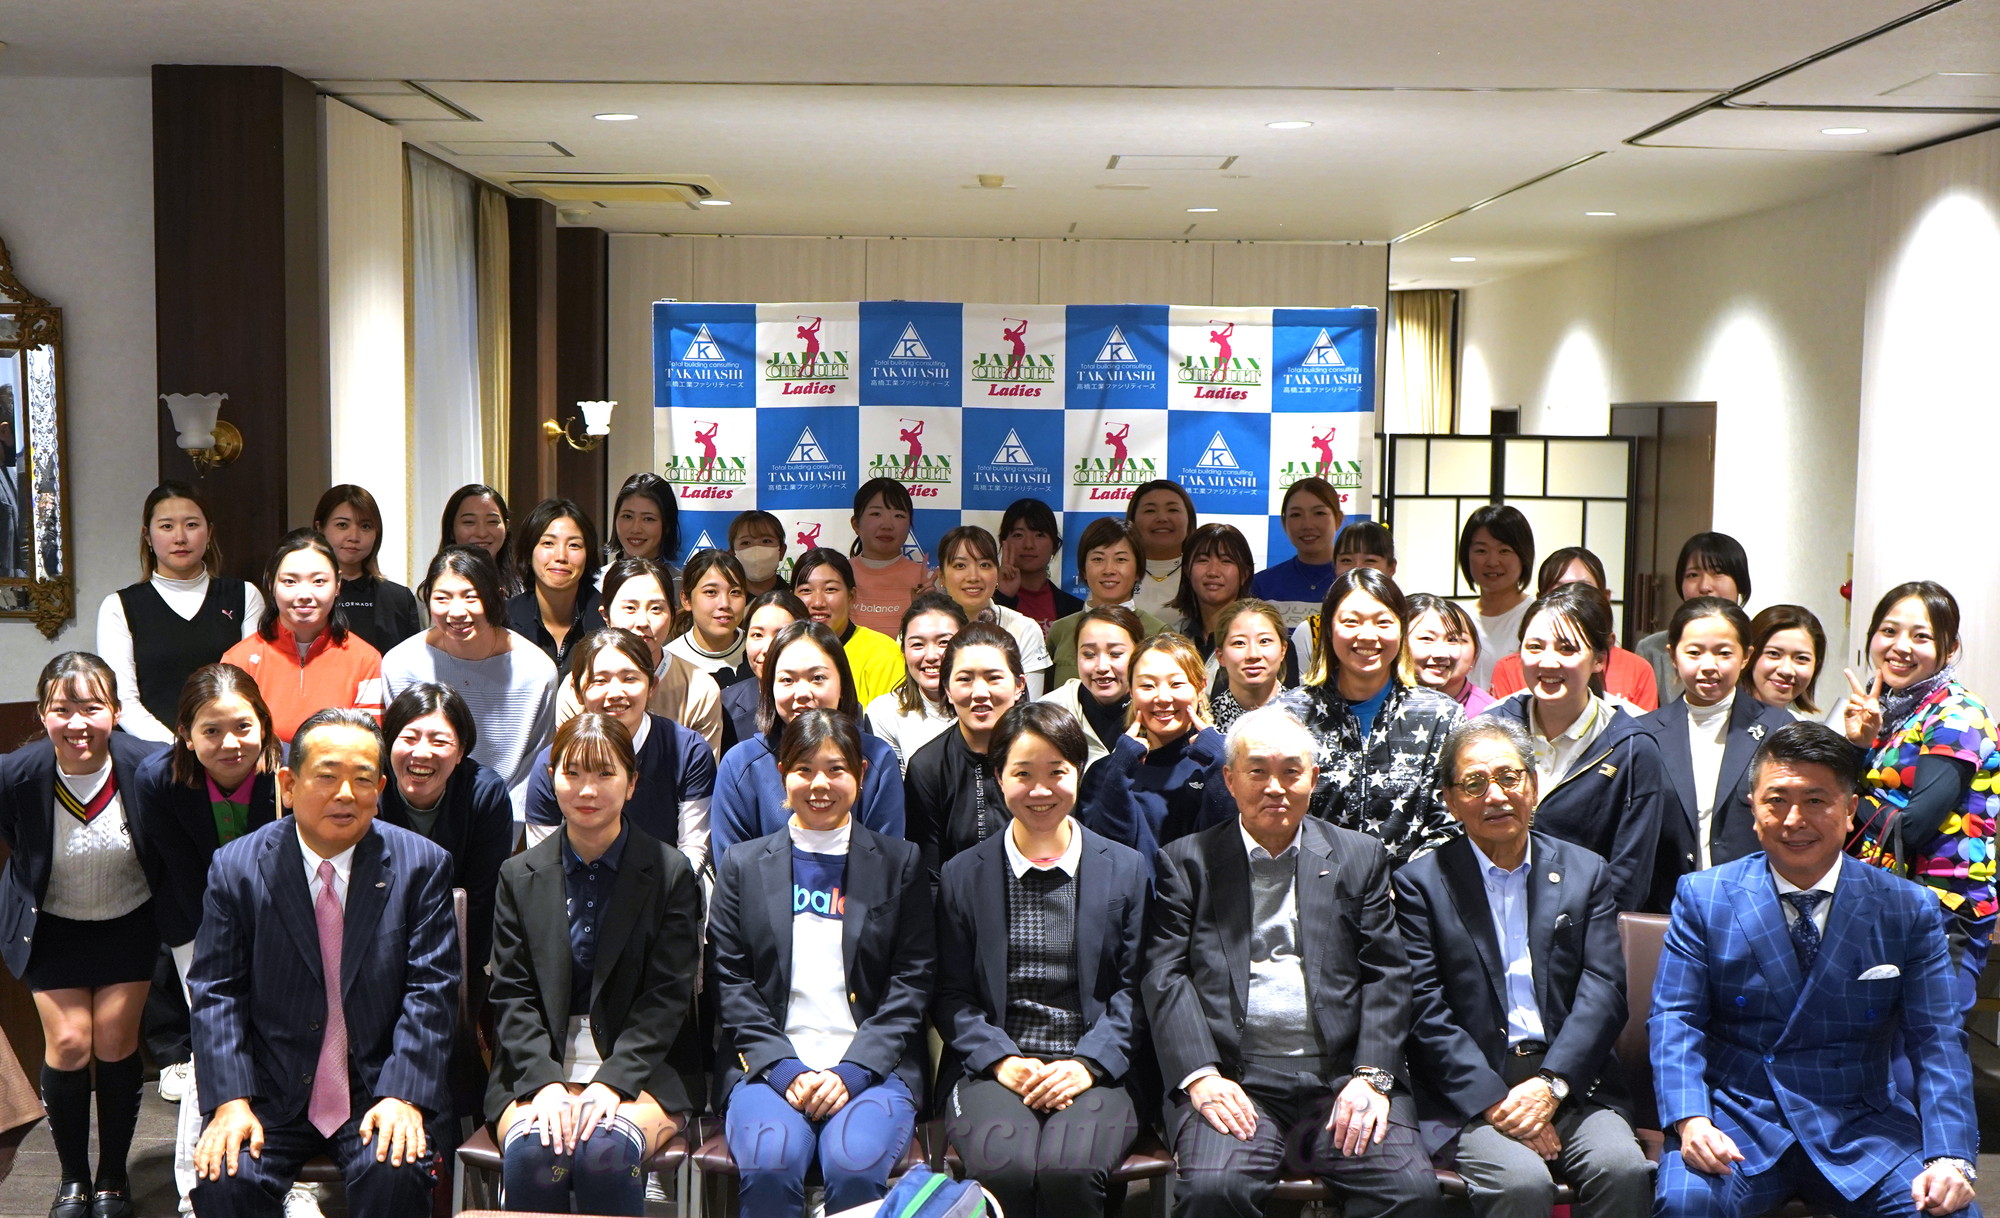 Japan Circuit Ladies Organization